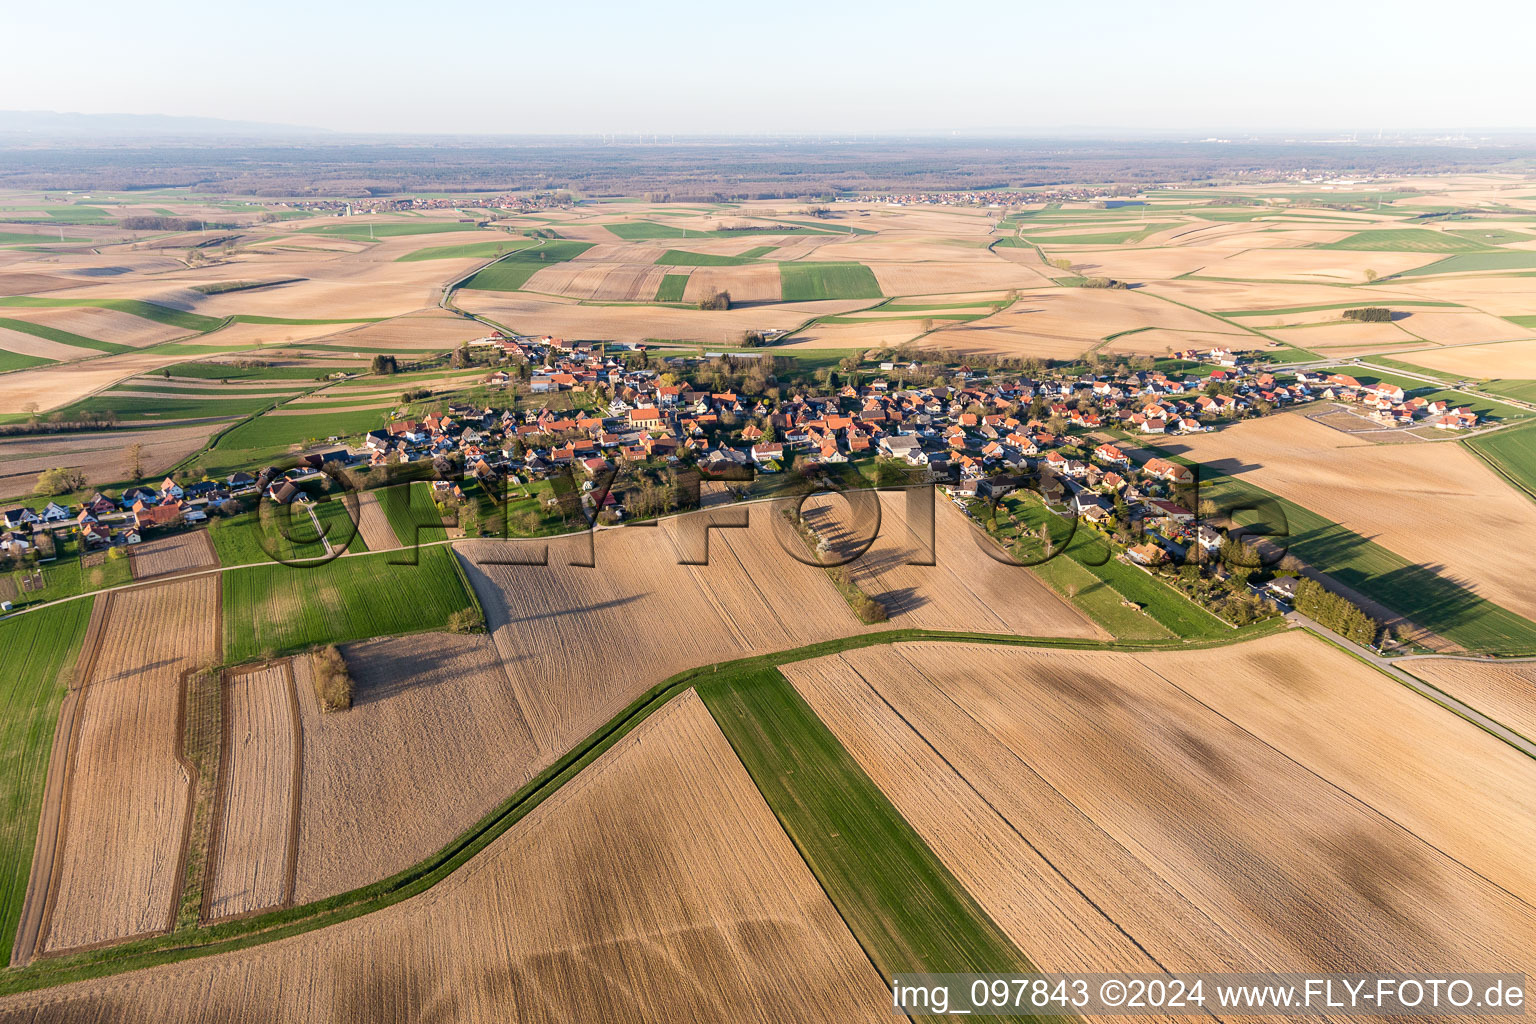 Vue aérienne de Champs agricoles et surfaces utilisables à Oberlauterbach dans le département Bas Rhin, France